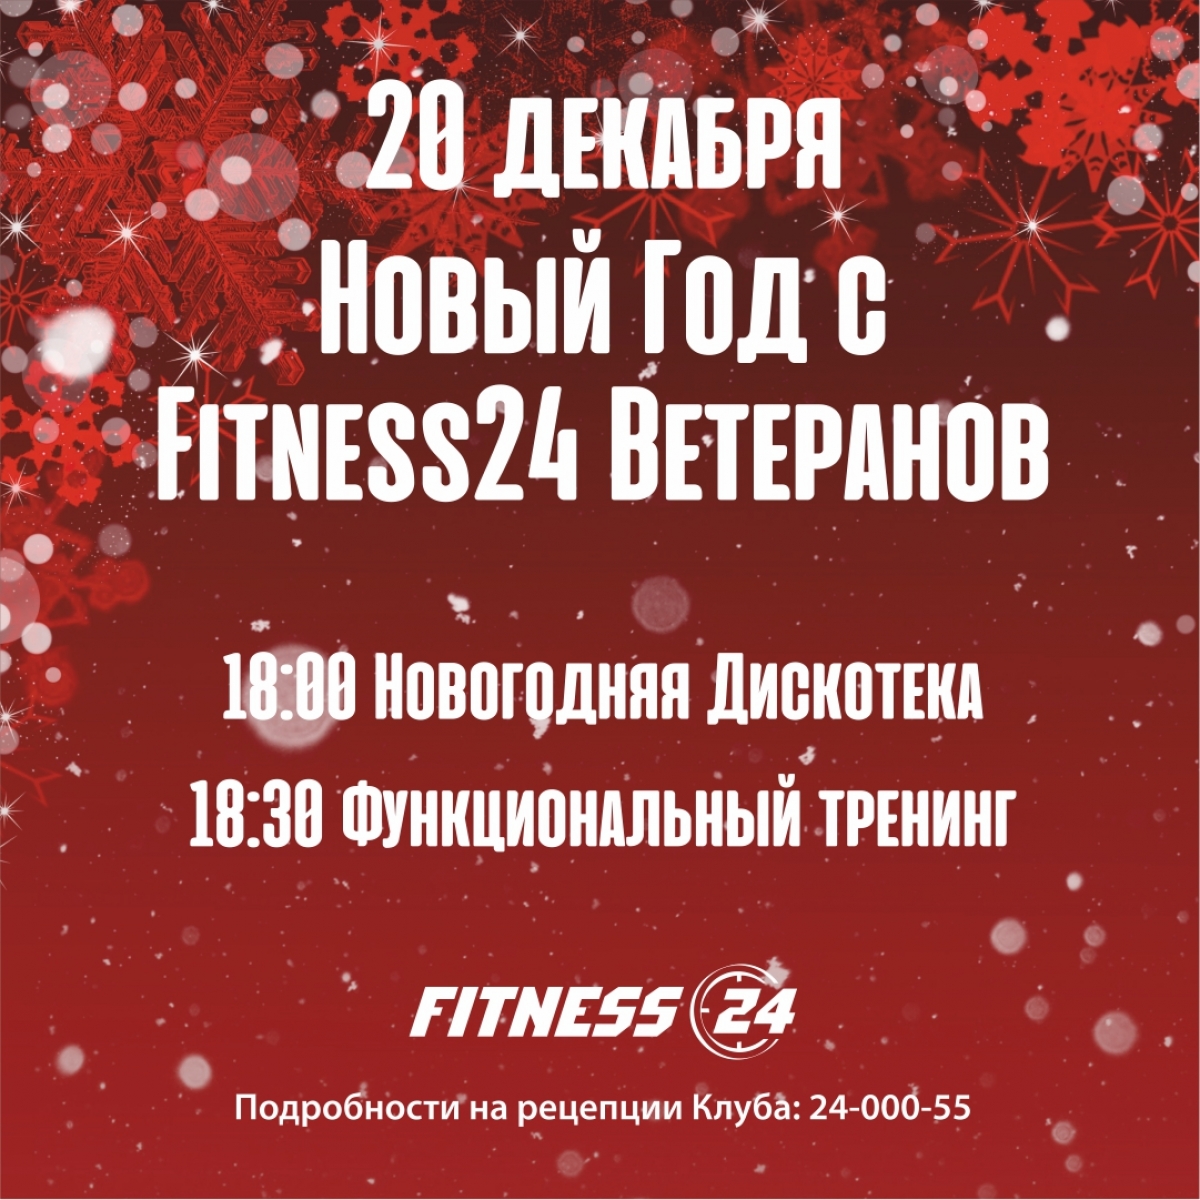 Новогоднее мероприятие в Fitness24 Ветеранов